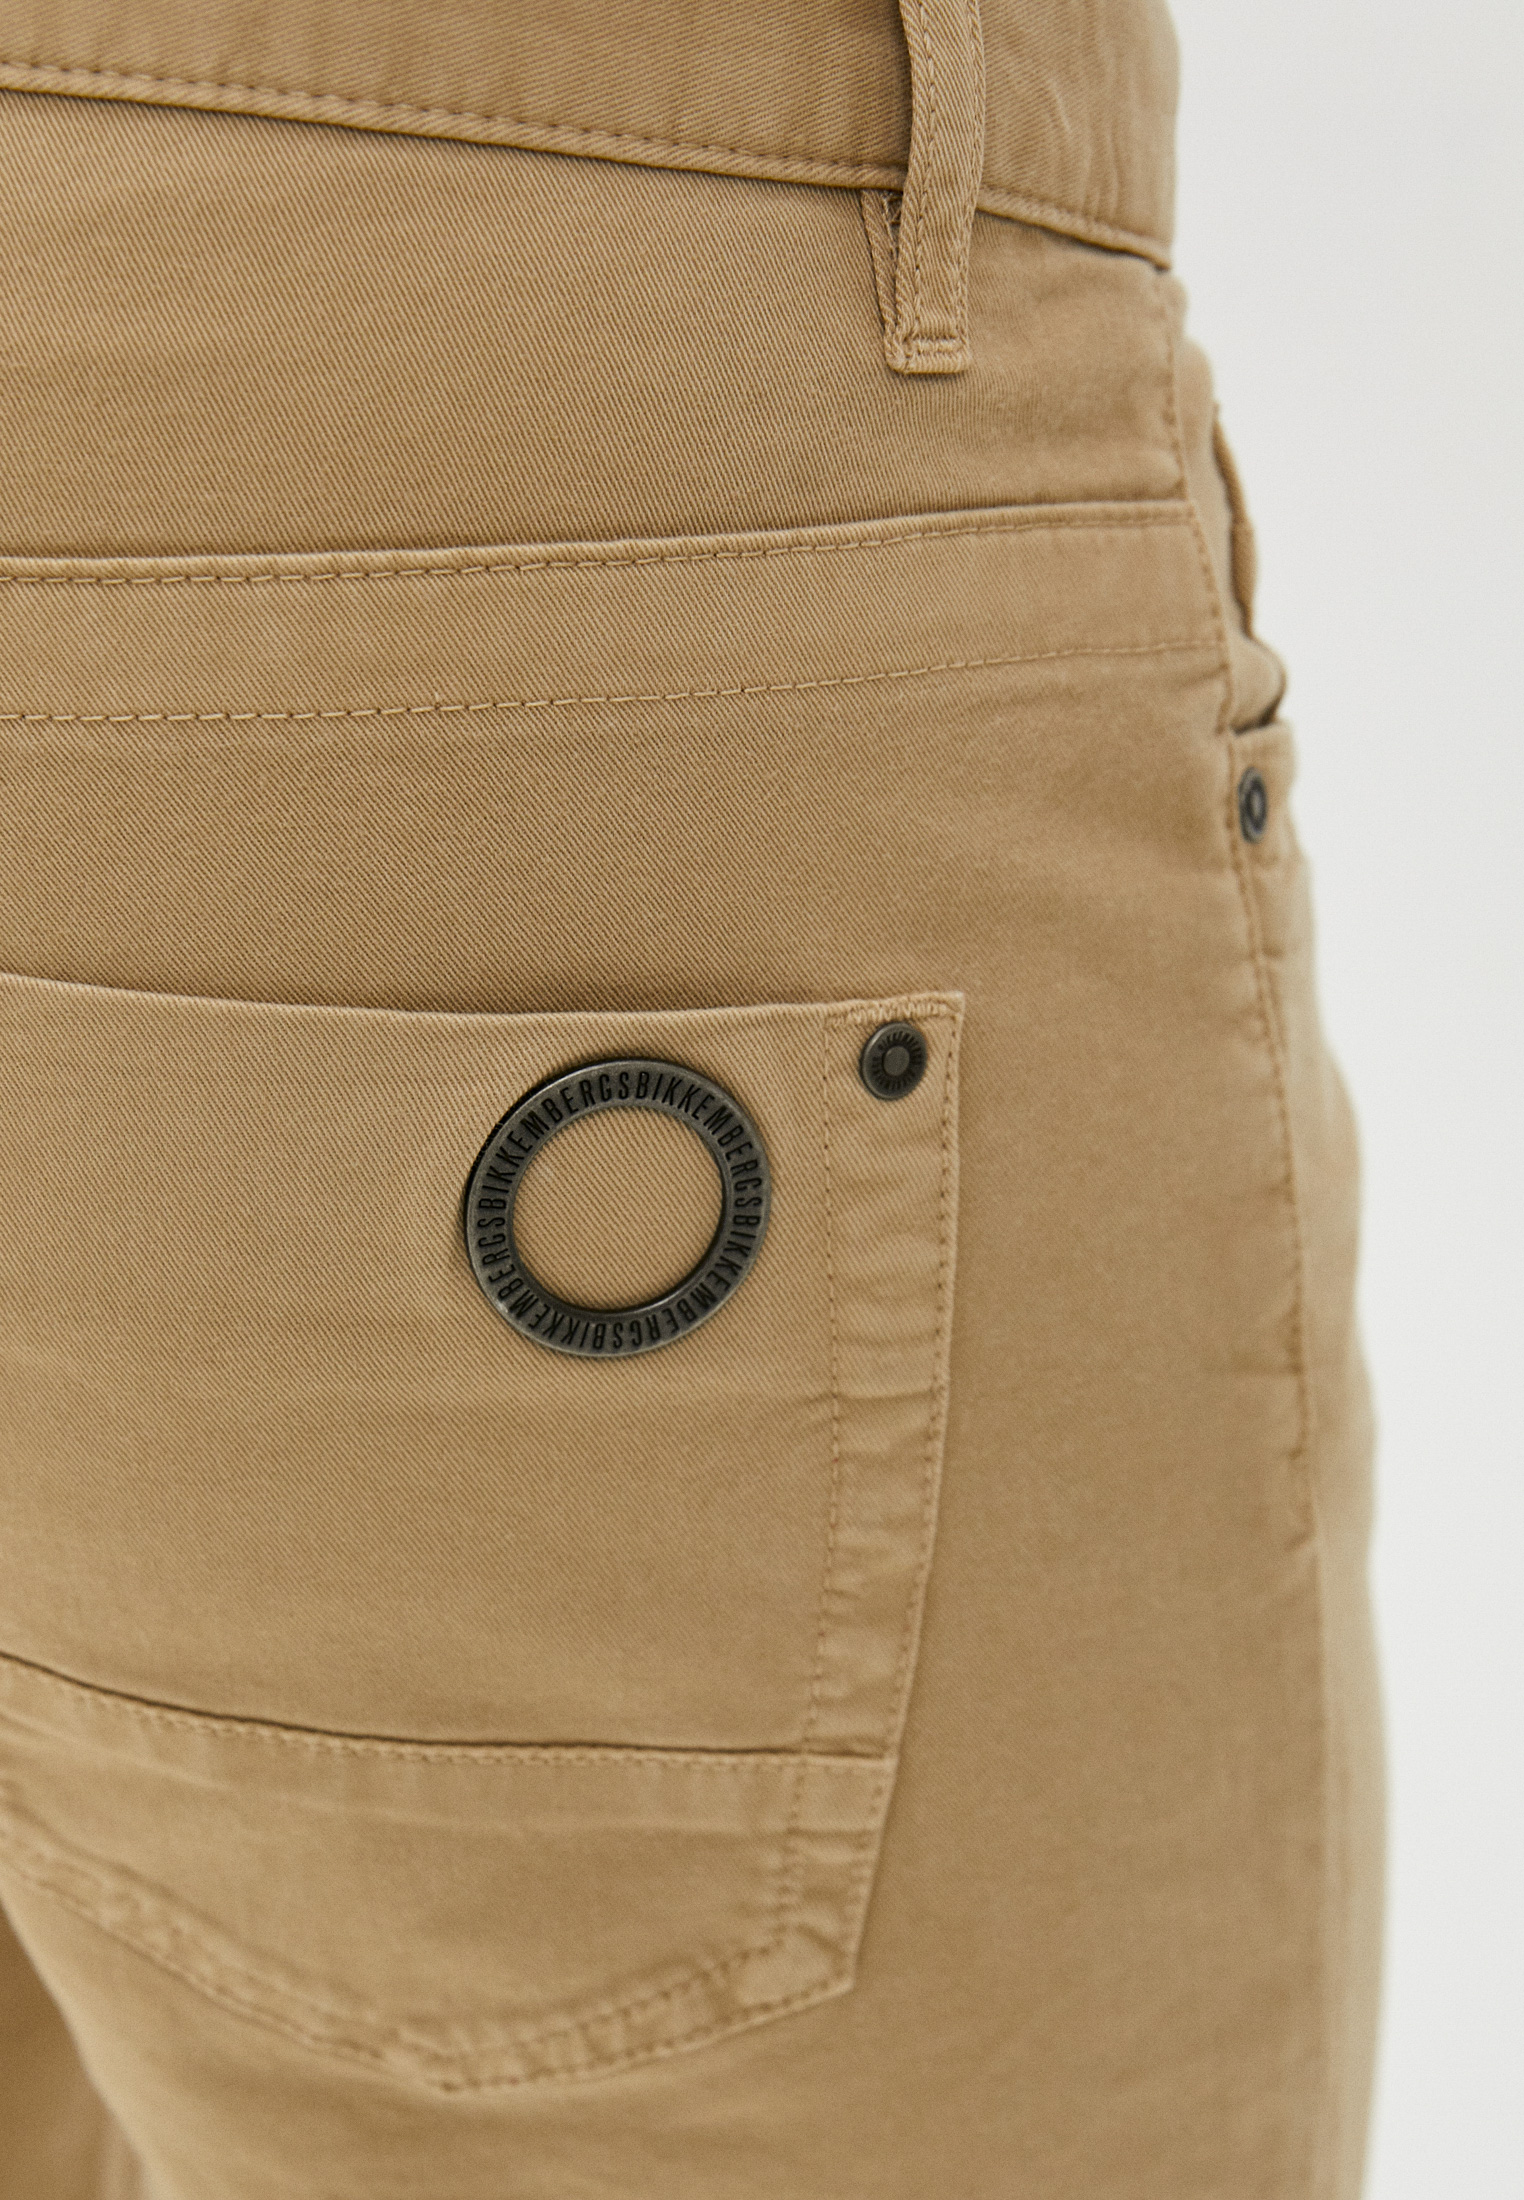 Мужские брюки Bikkembergs (Биккембергс) C Q 101 18 S 3279: изображение 9